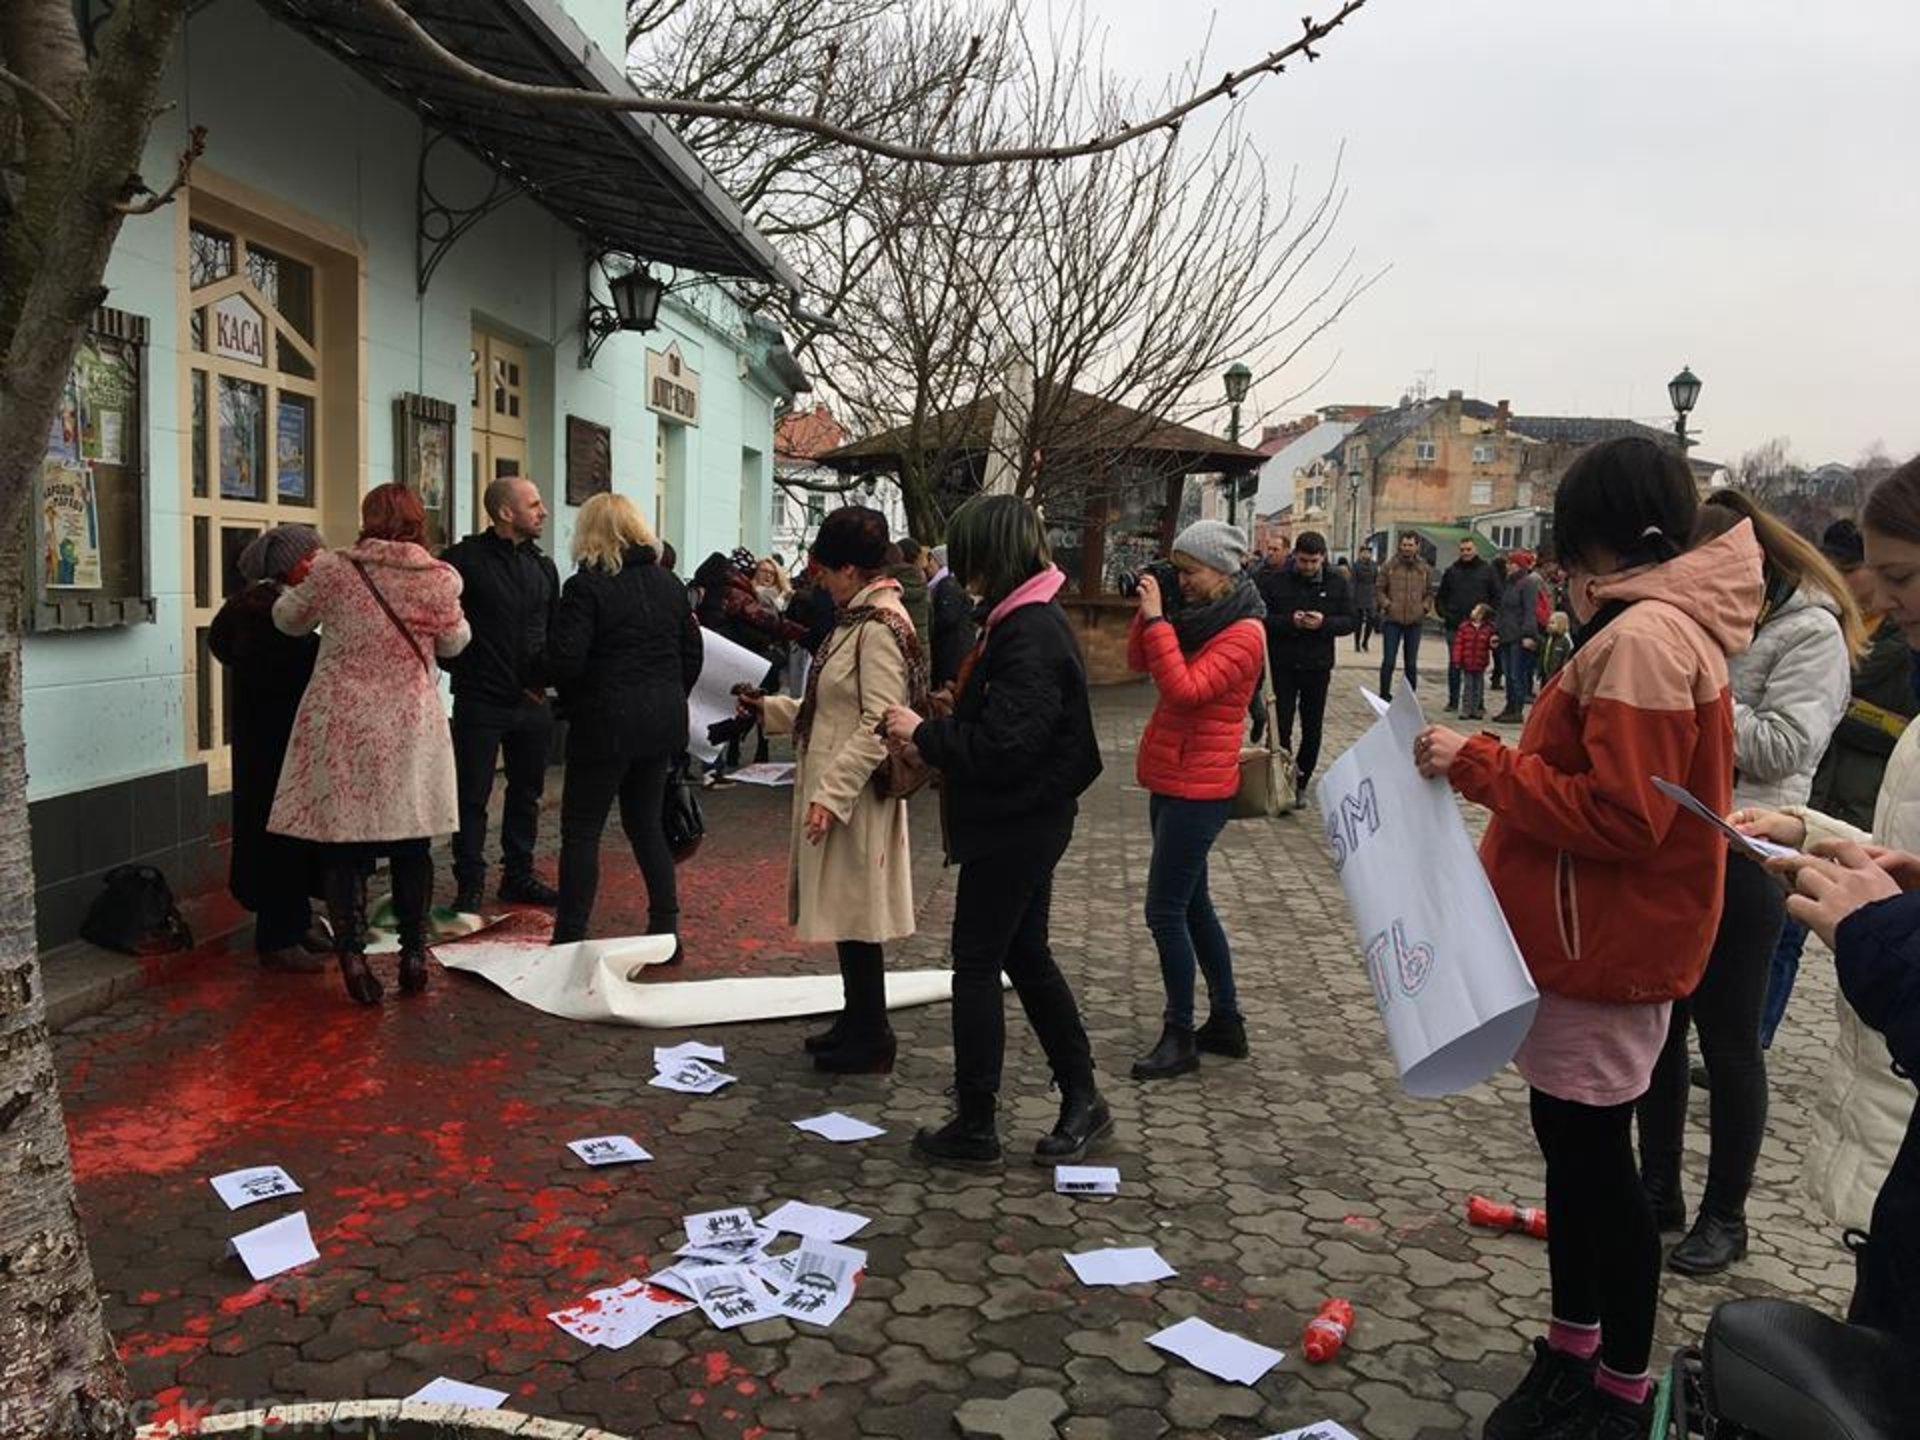 Прихильники націоналістичної організації «Карпатська Січ» переслідують учасників акції за права жінок, яка відбулася в Ужгороді 8 березня, повідомила Радіо Свобода активістка Віталіна Коваль.